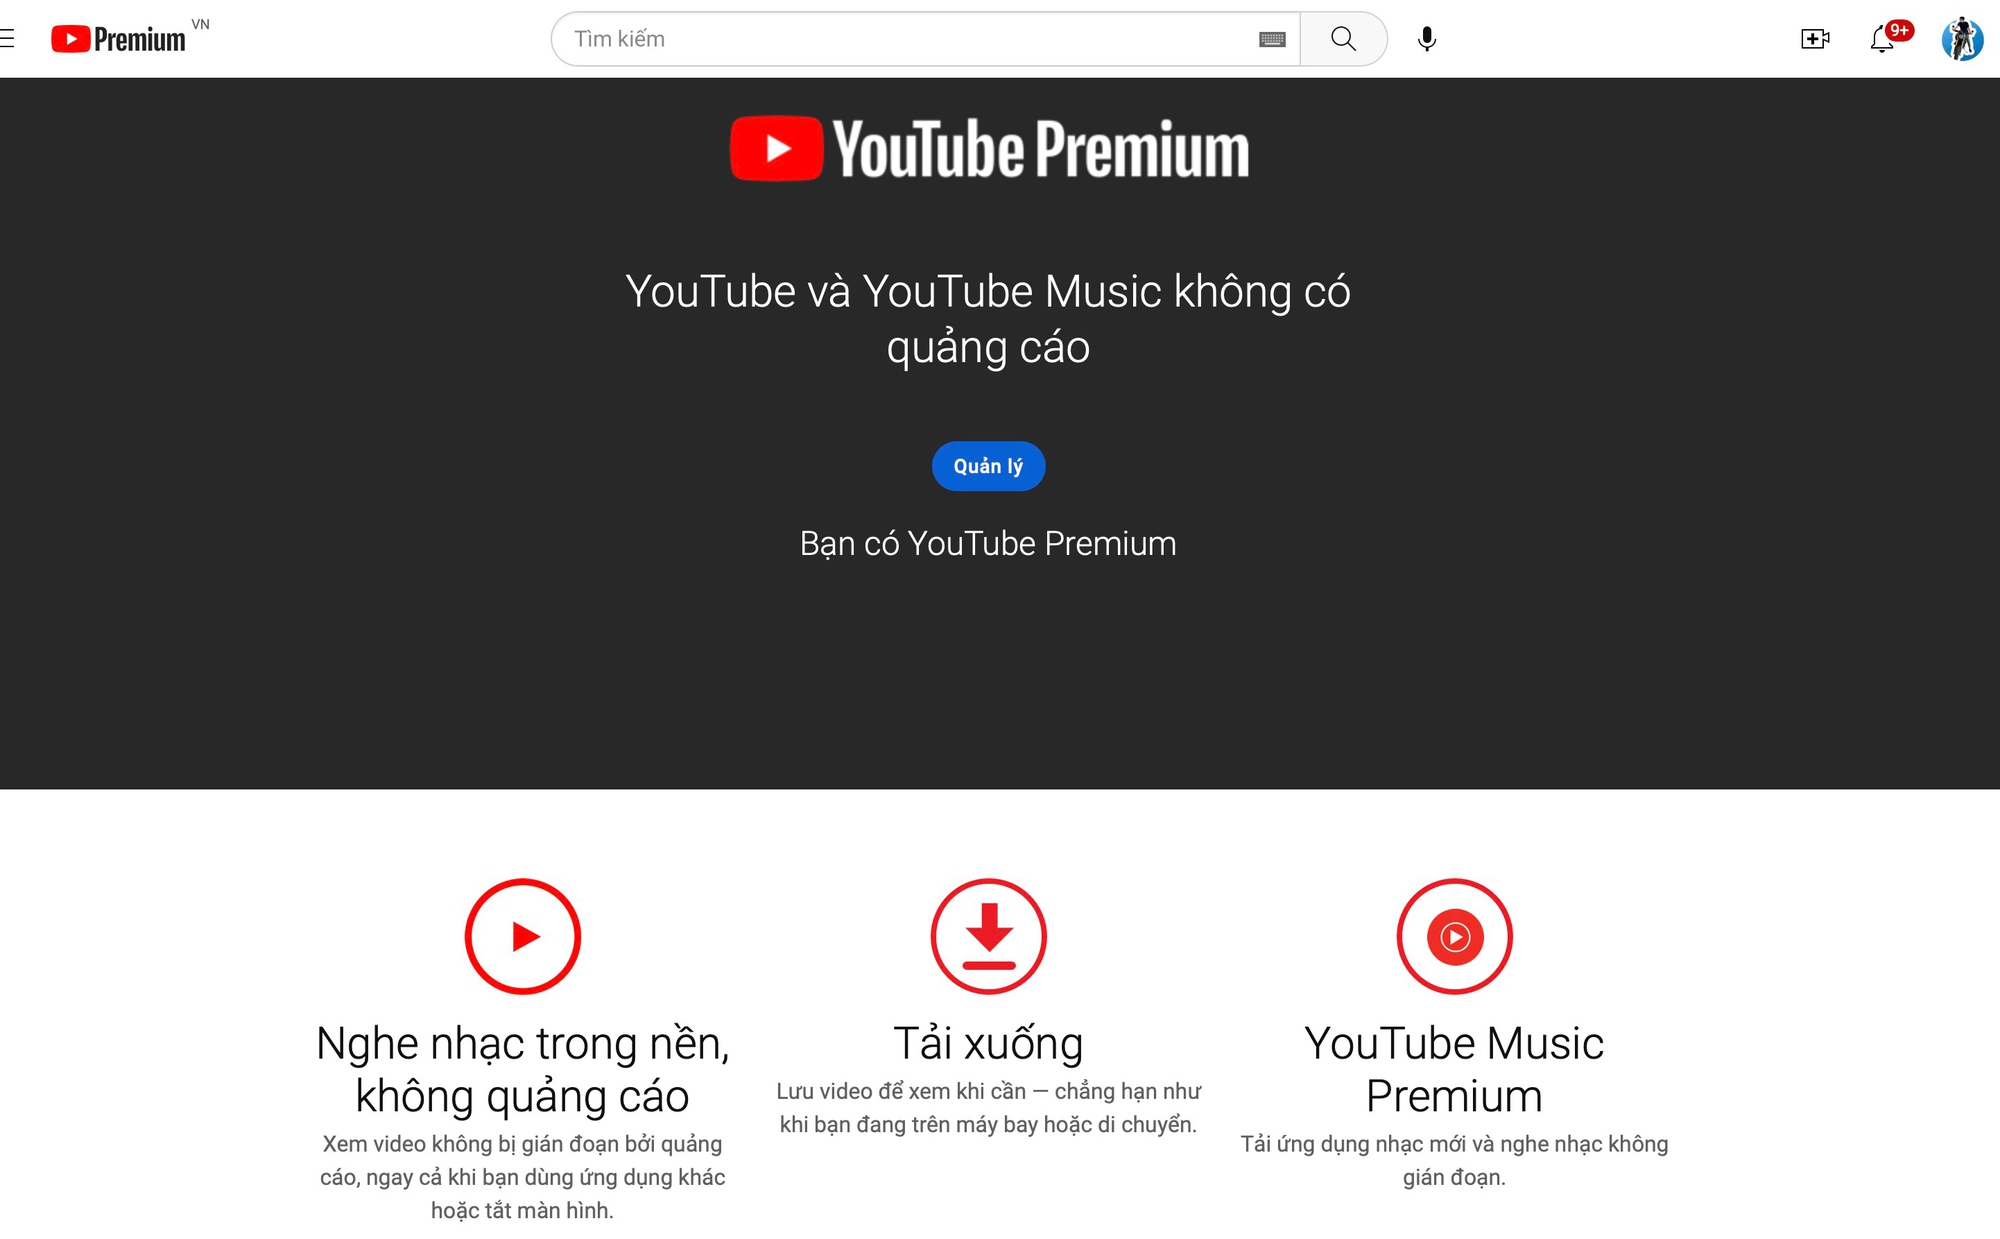 Cách Đăng Ký Youtube Premium Tại Việt Nam Để Có Giá Hời, Được Miễn Phí Dùng  Thử